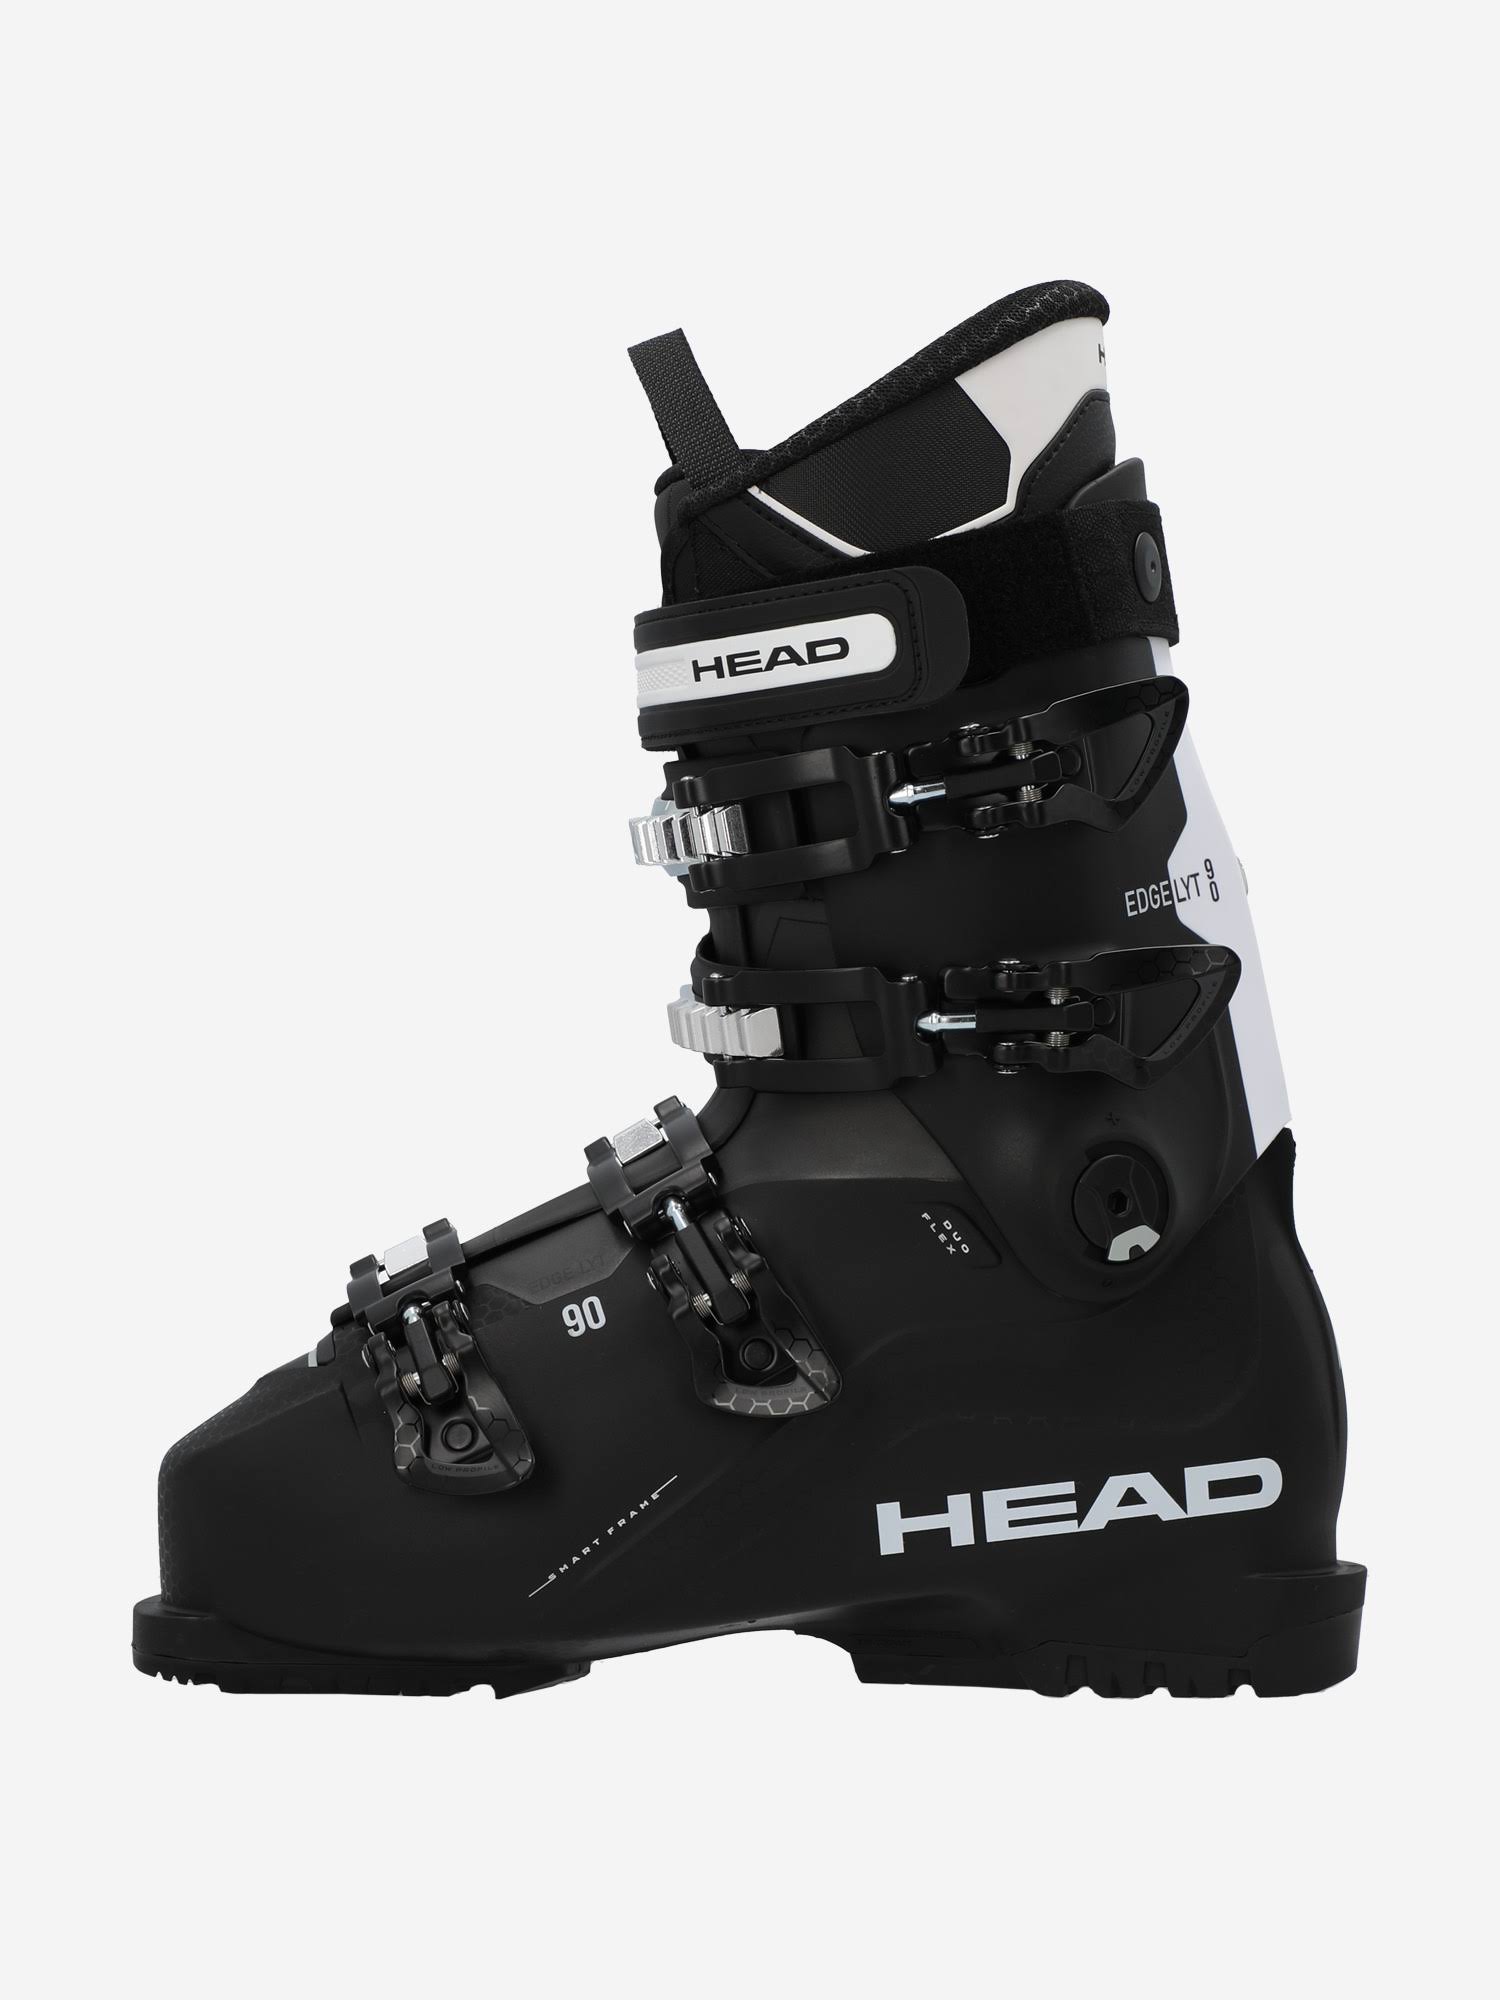 Head - Edge Lyt 90 HV Black White - 27-27.5 - Ski Boots